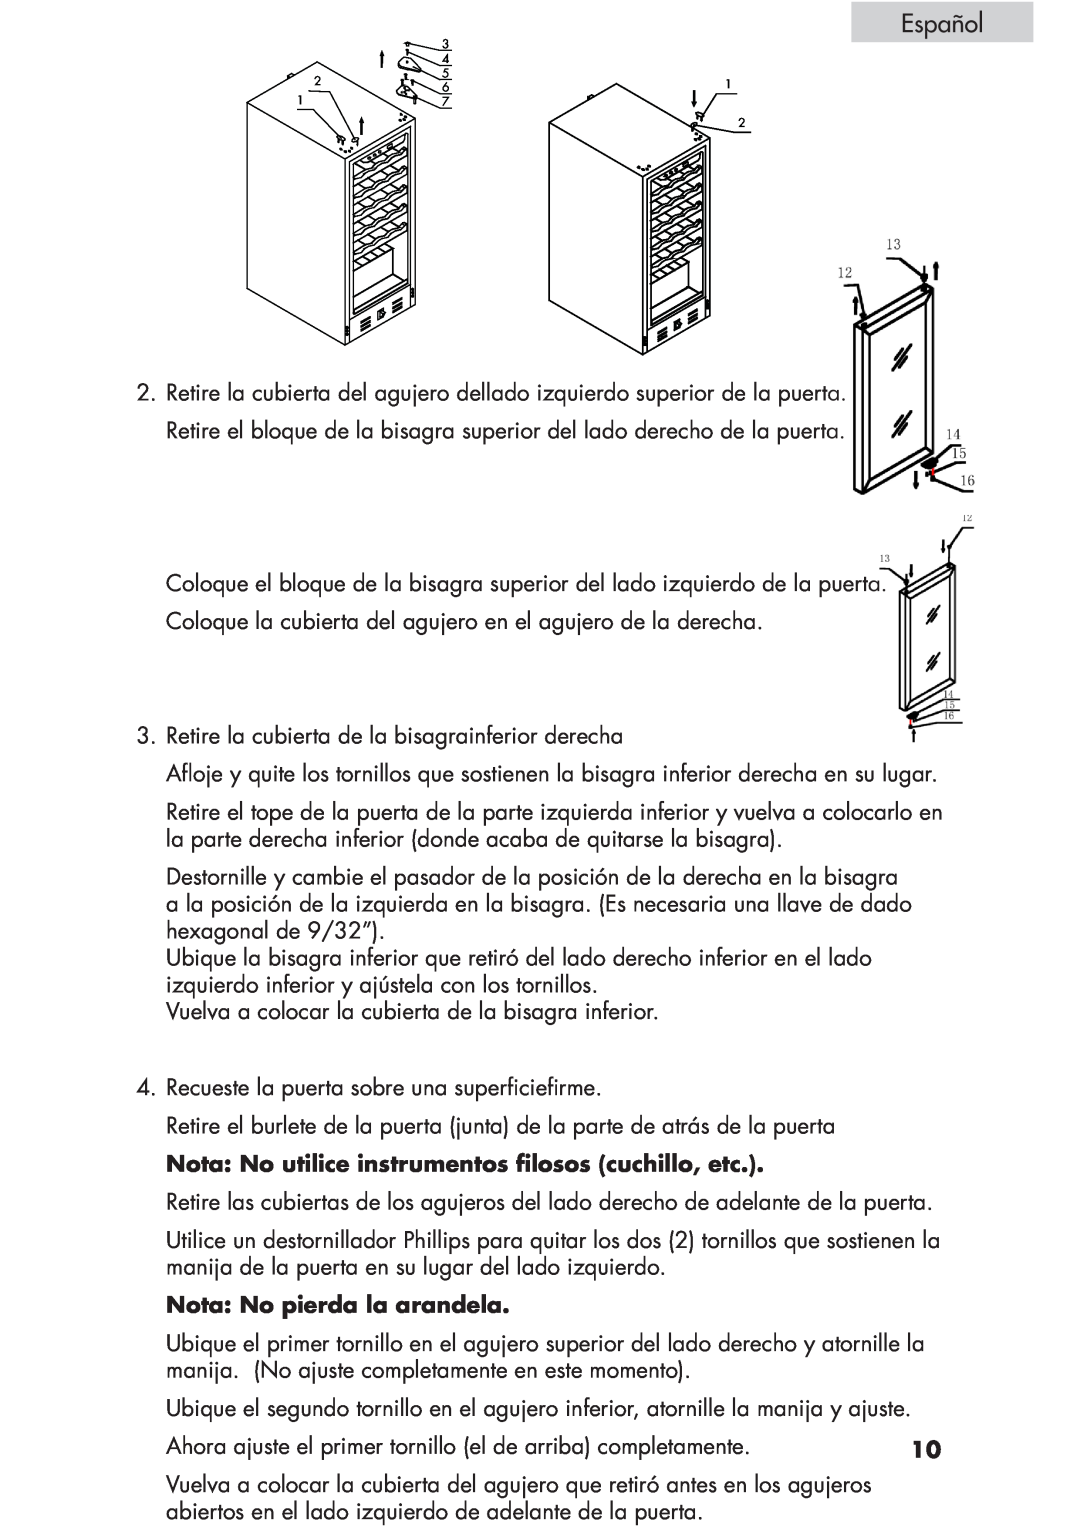 Haier HVCE15, HVCE24 user manual Español, Nota: No pierda la arandela 